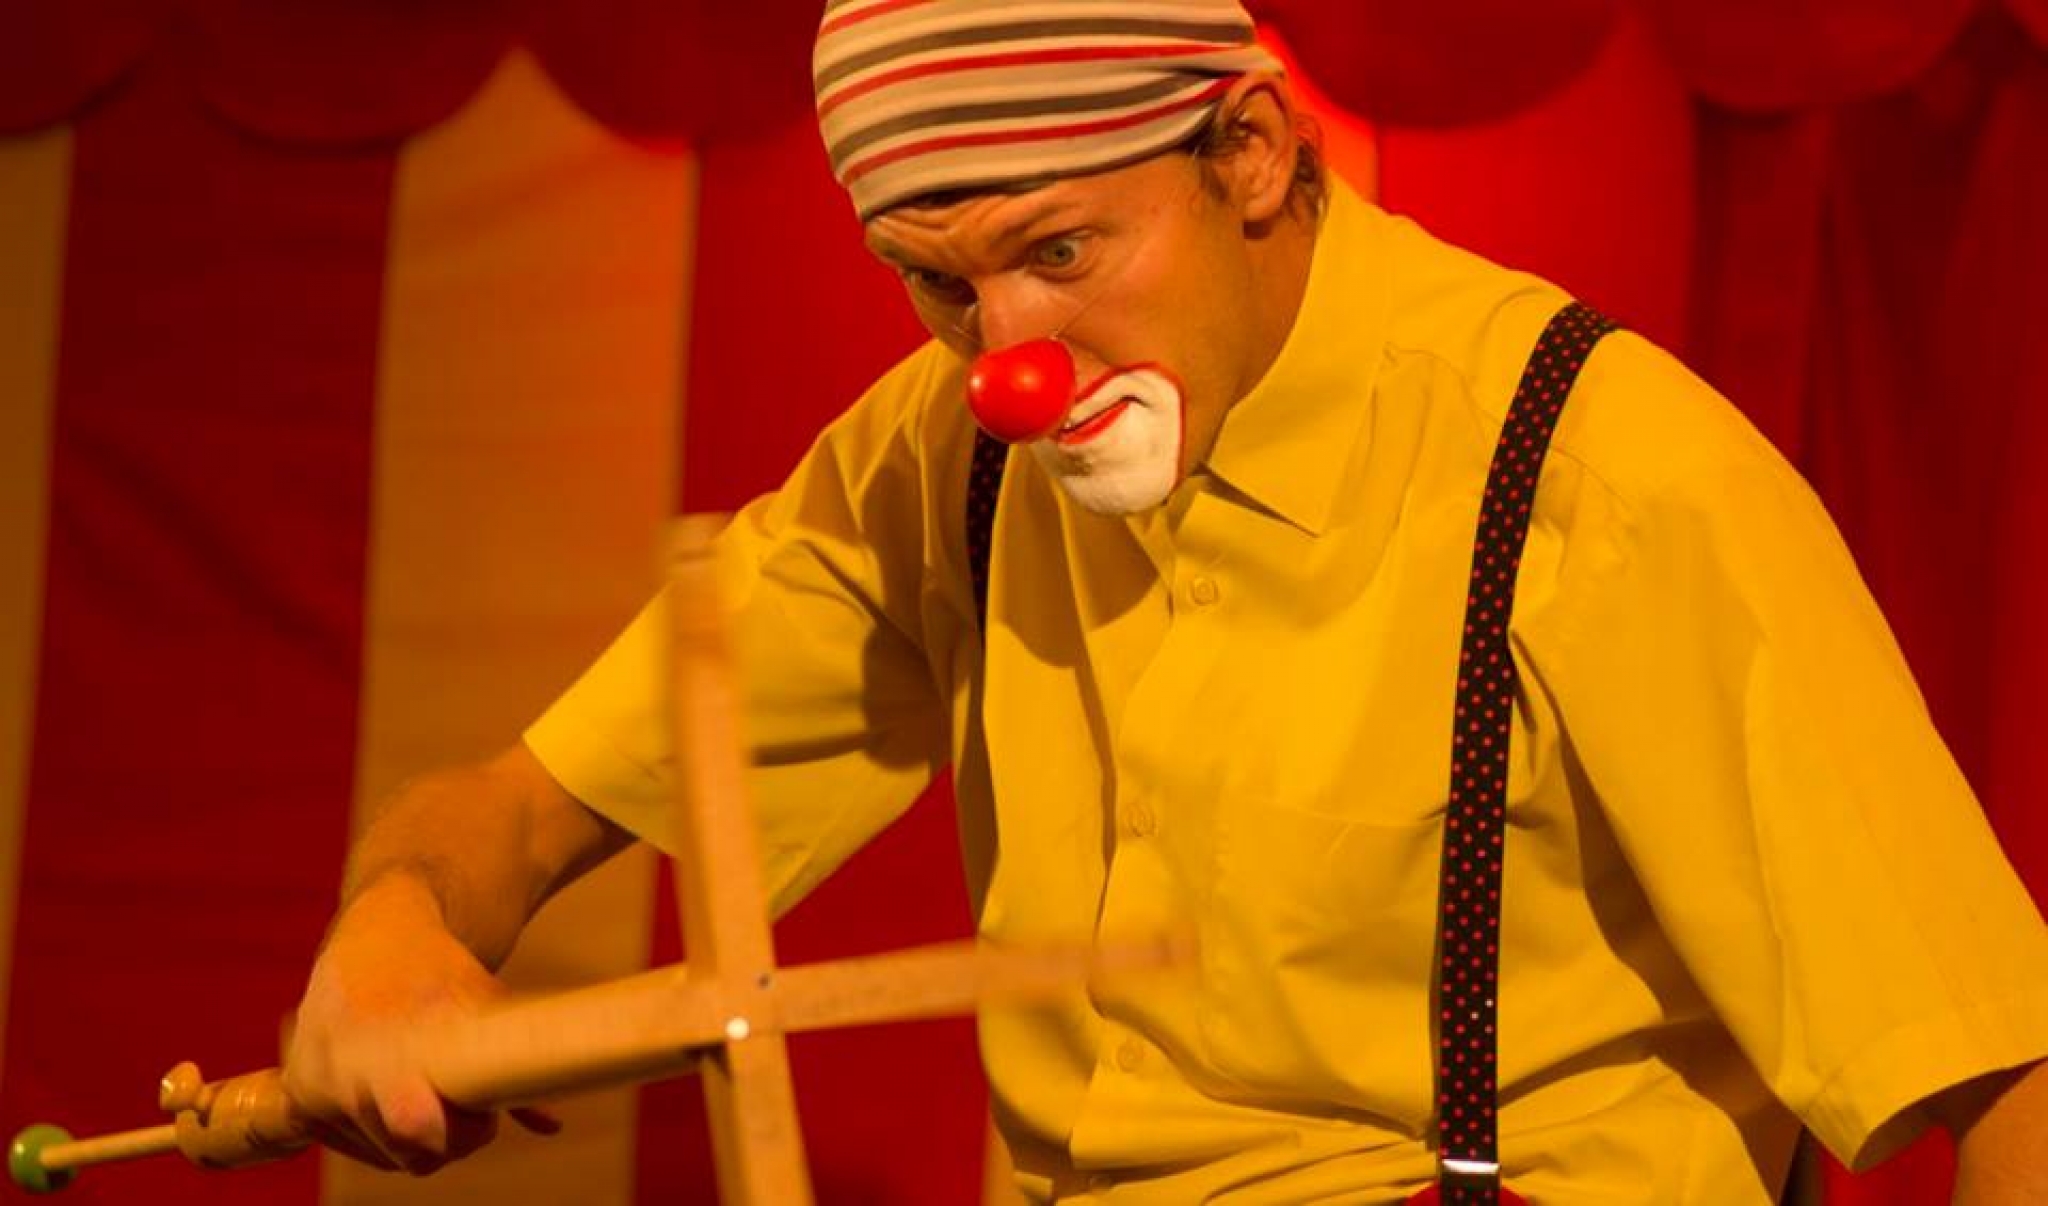 Toy toy circus show - spektakl